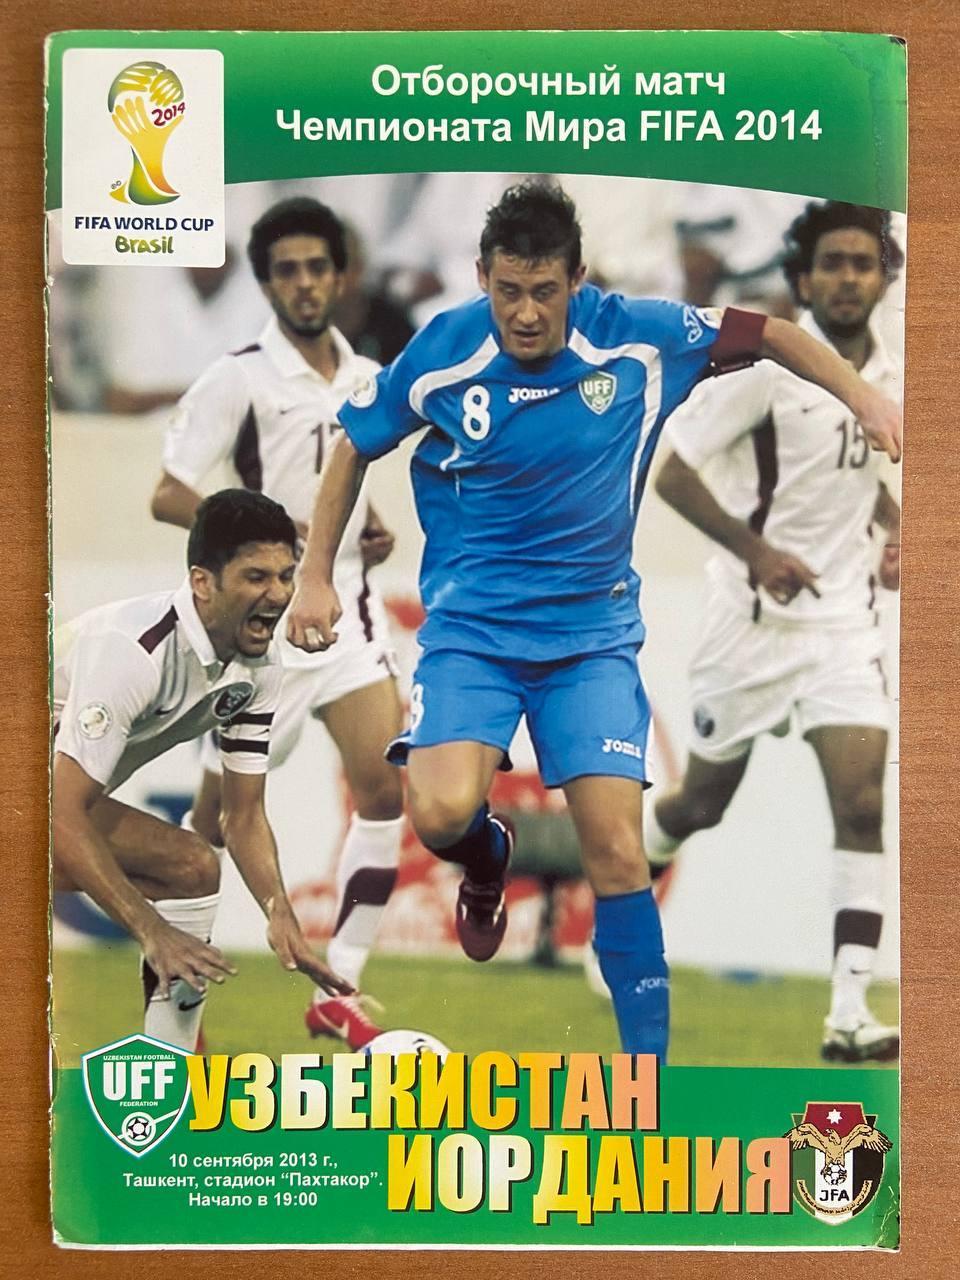 Узбекистан (сборная) - Иордания (сборная), 10 сентября 2013 г.